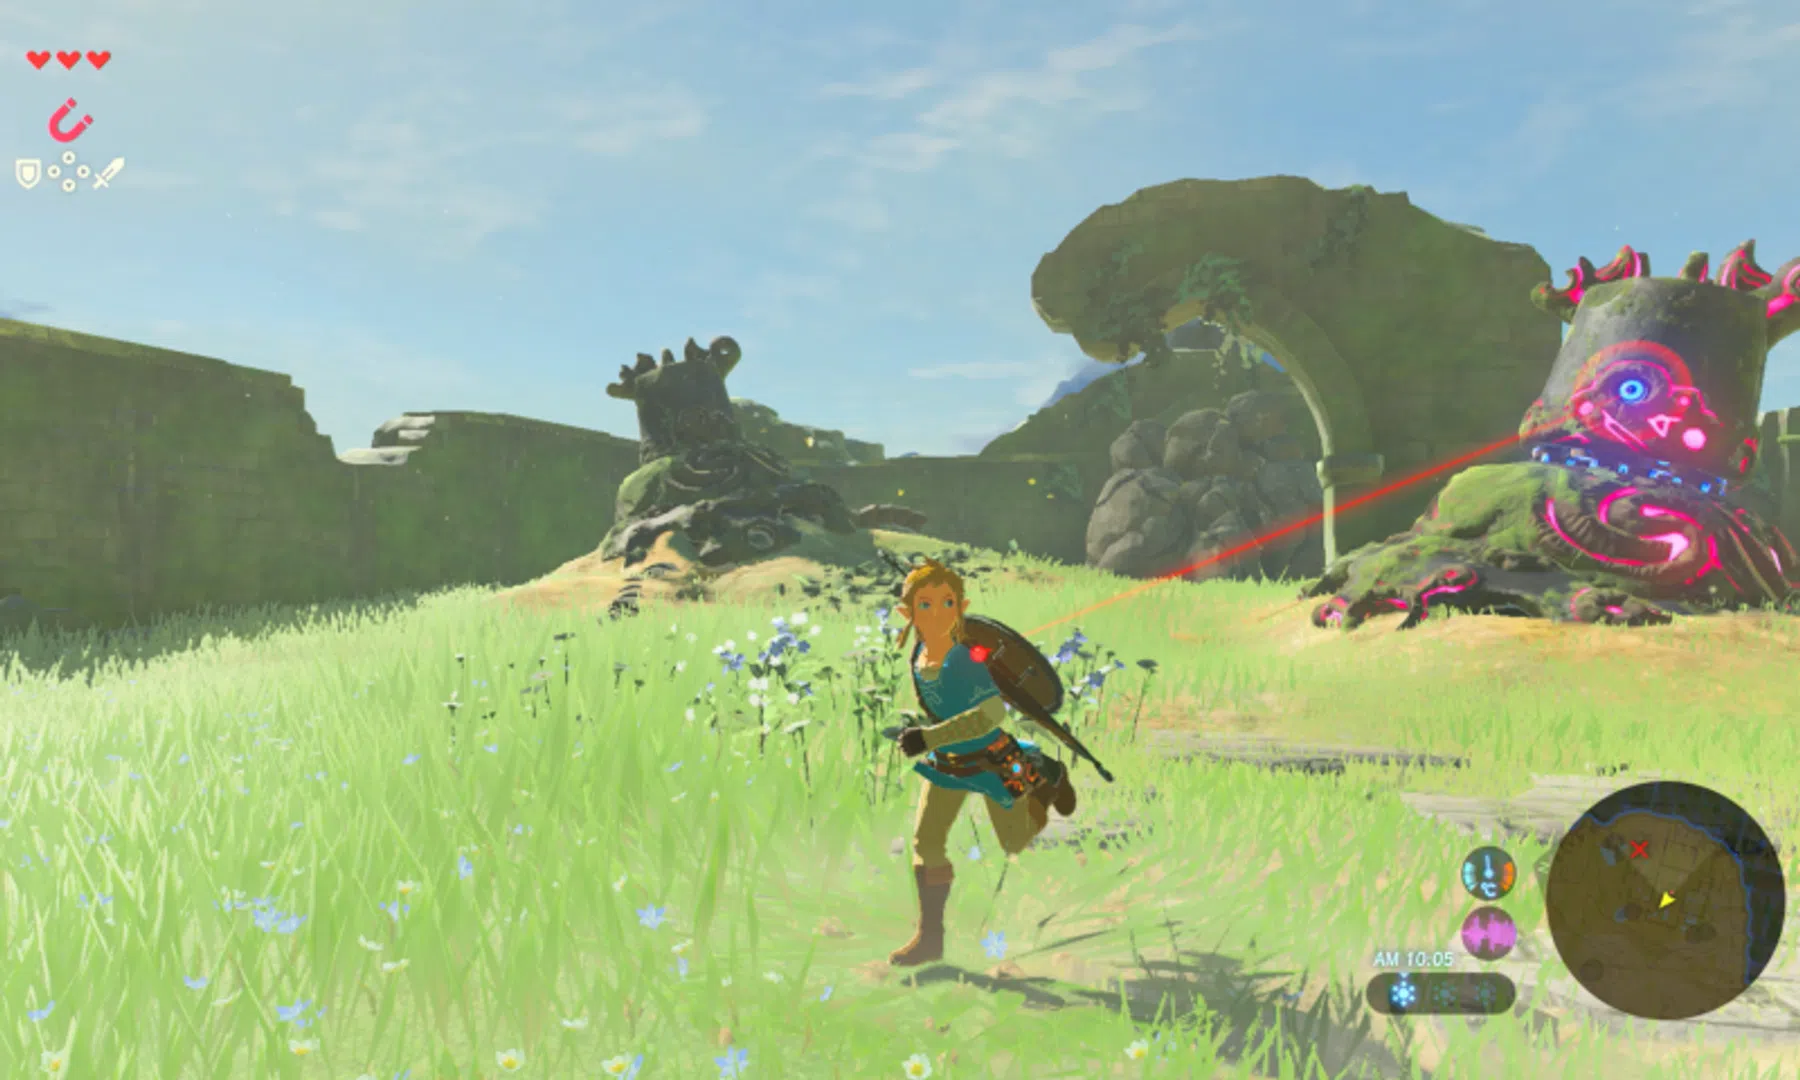 Uitbreiding Zelda Breath of the Wild met 'hard mode'